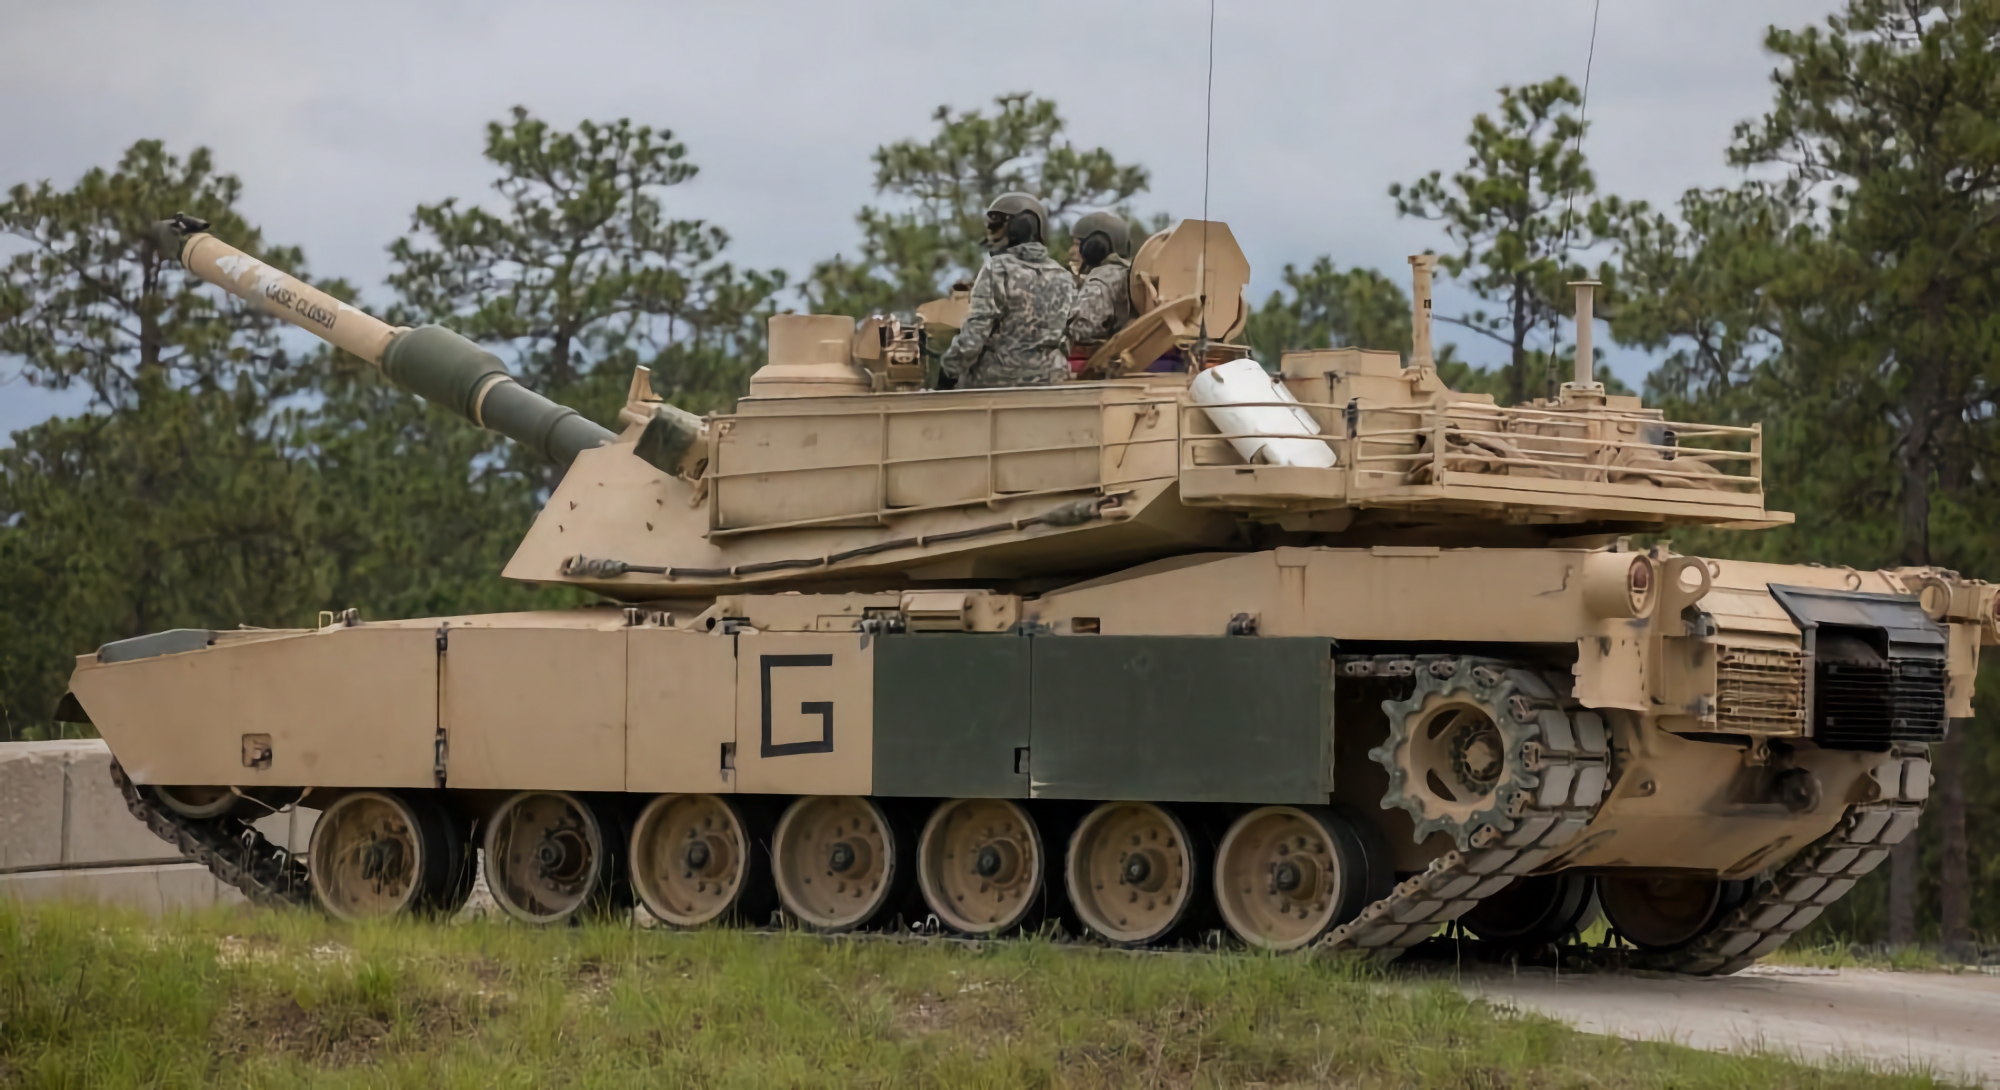 Le secrétaire américain à la défense dit quand l'armée ukrainienne recevra des chars Abrams